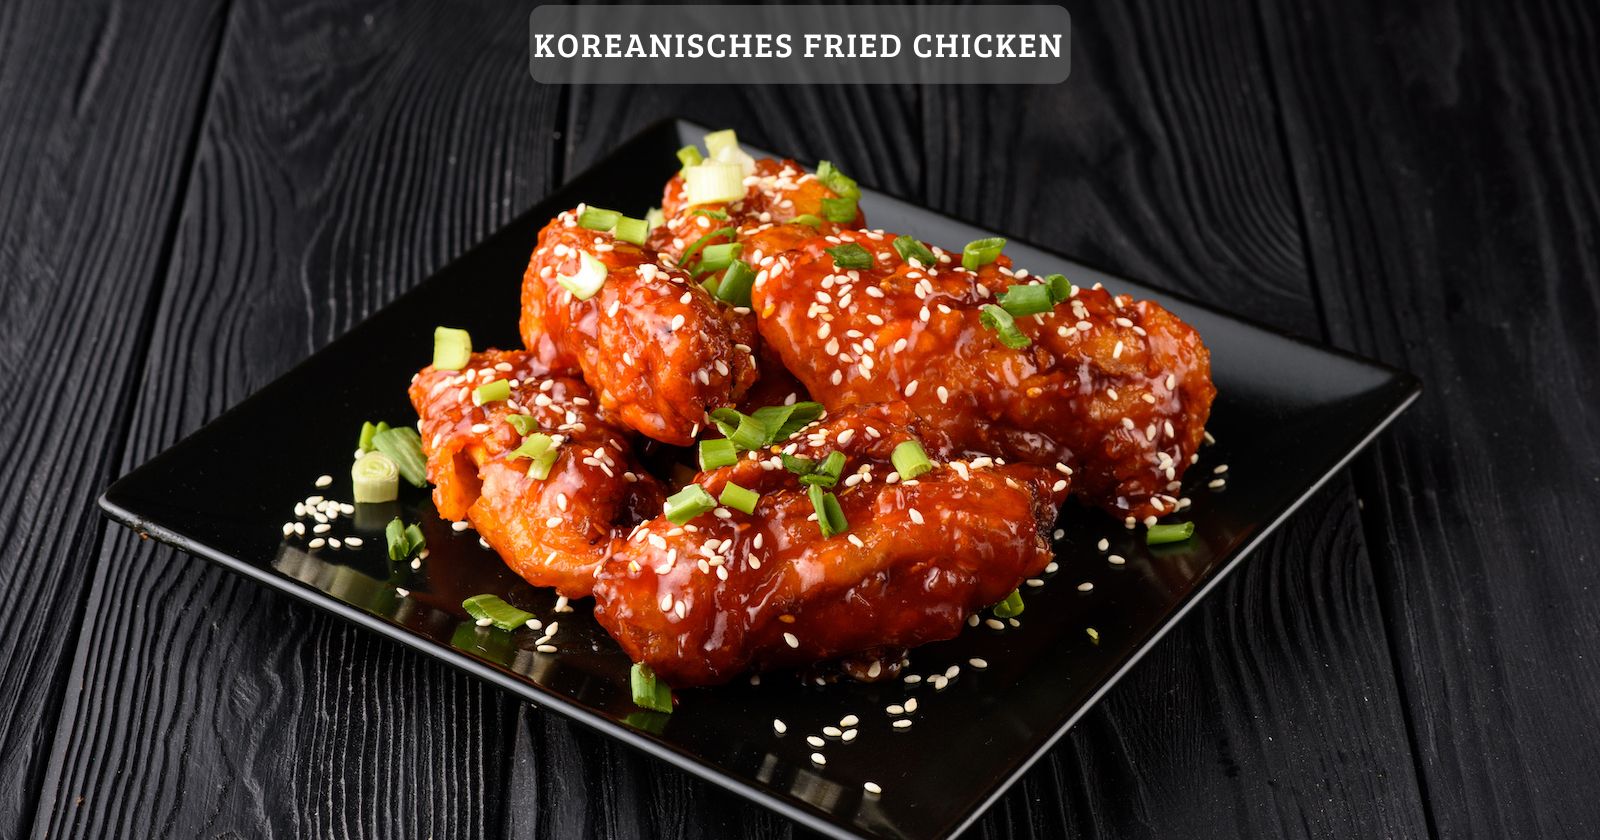 Leckeres koreanisches fried chicken